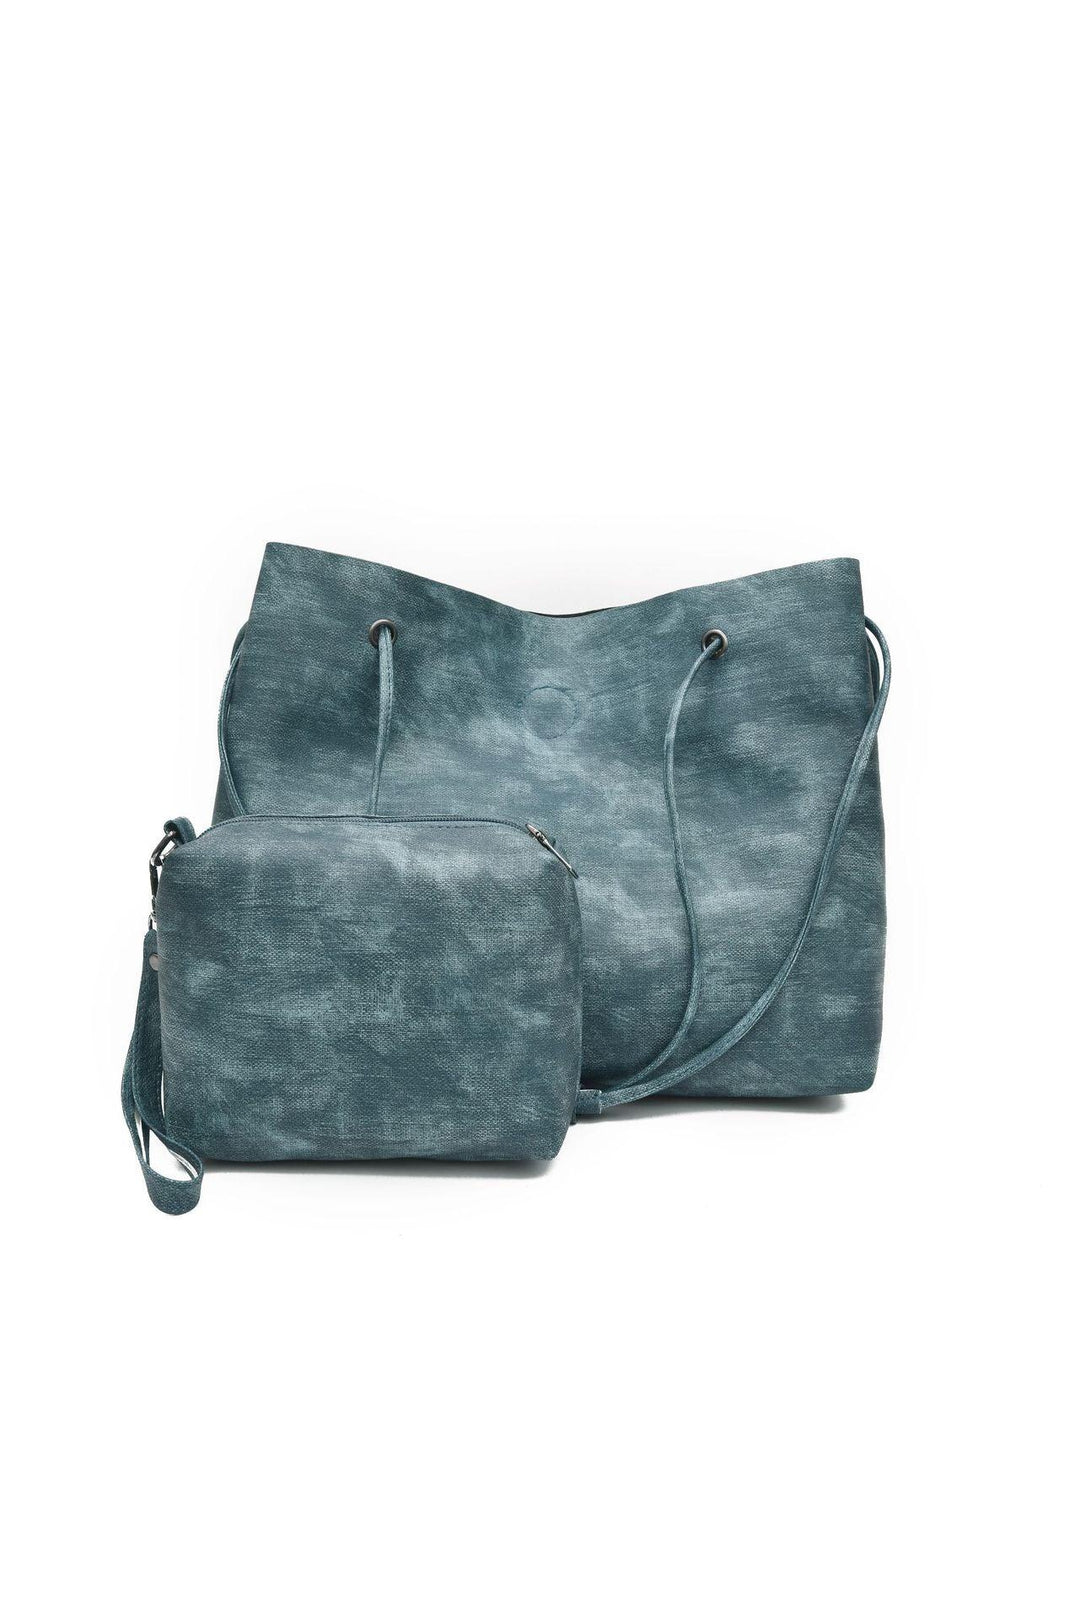 New Fashion Female Bag Mother And Child Bag Ink Color Shoulder Bag Simple Messenger Bag - Trendha